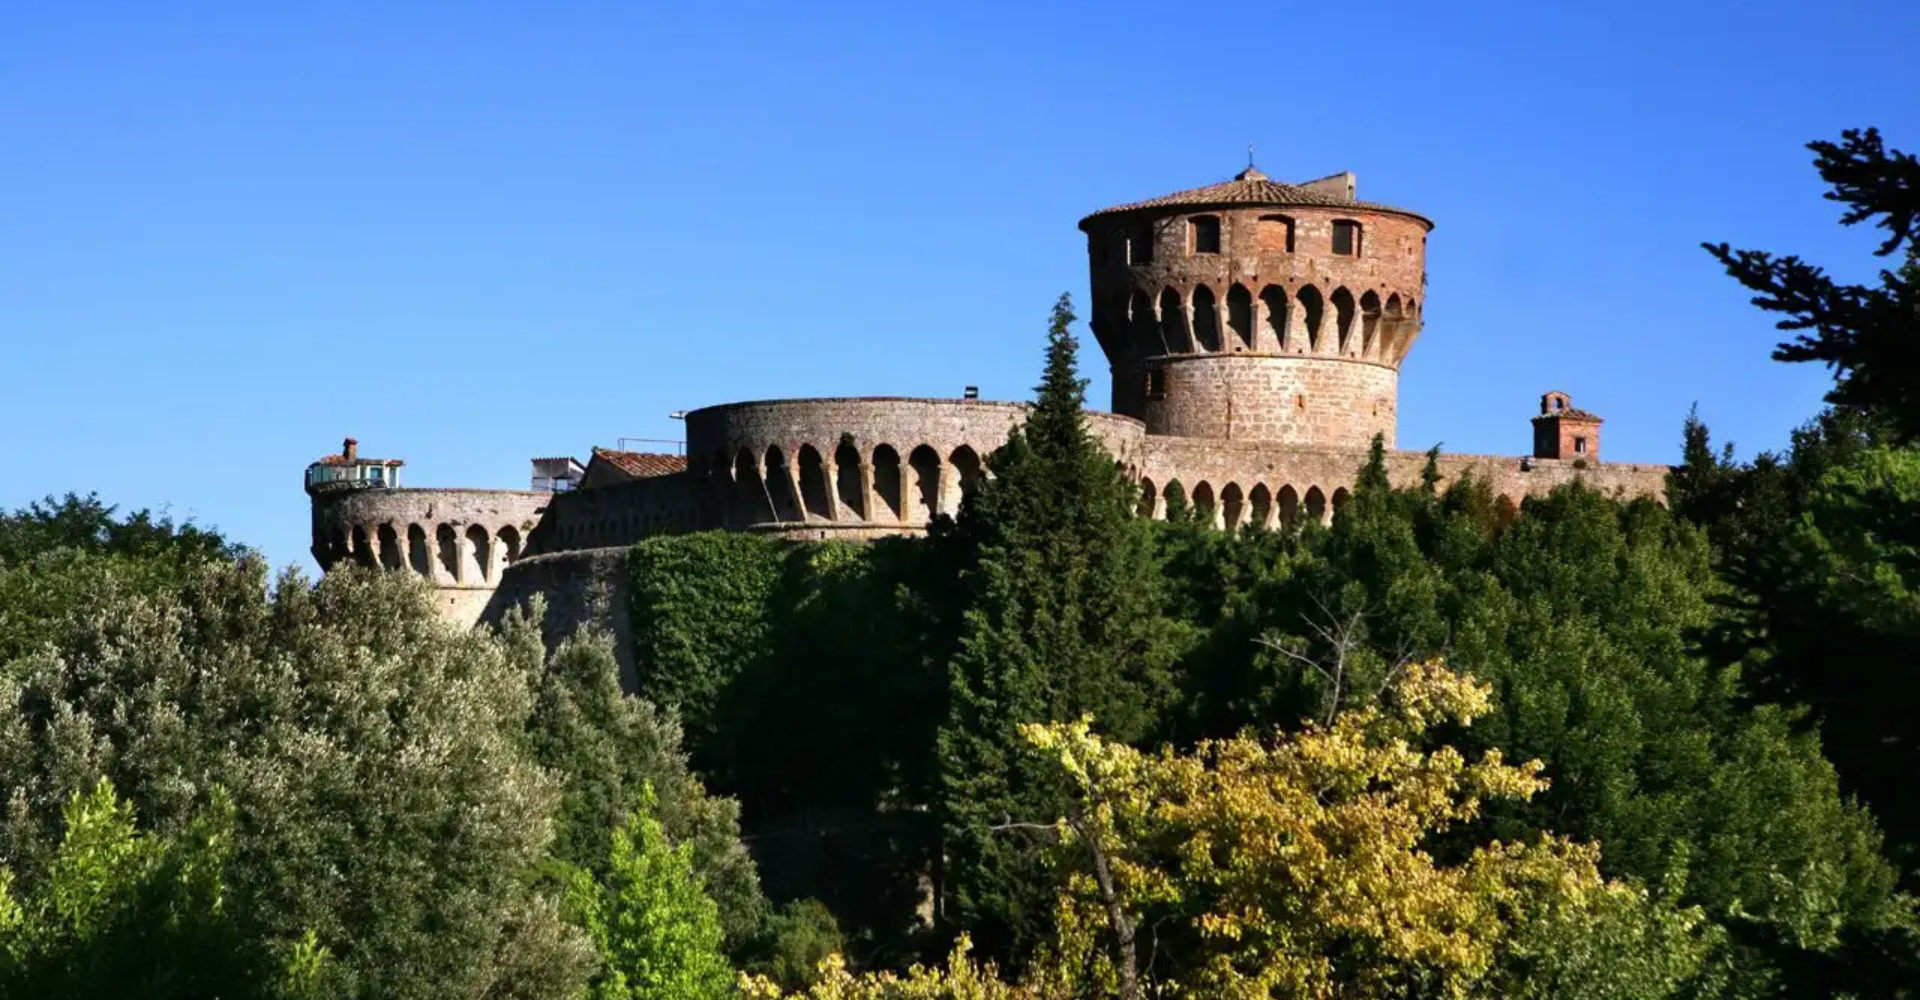 Medici Fortress of Volterra